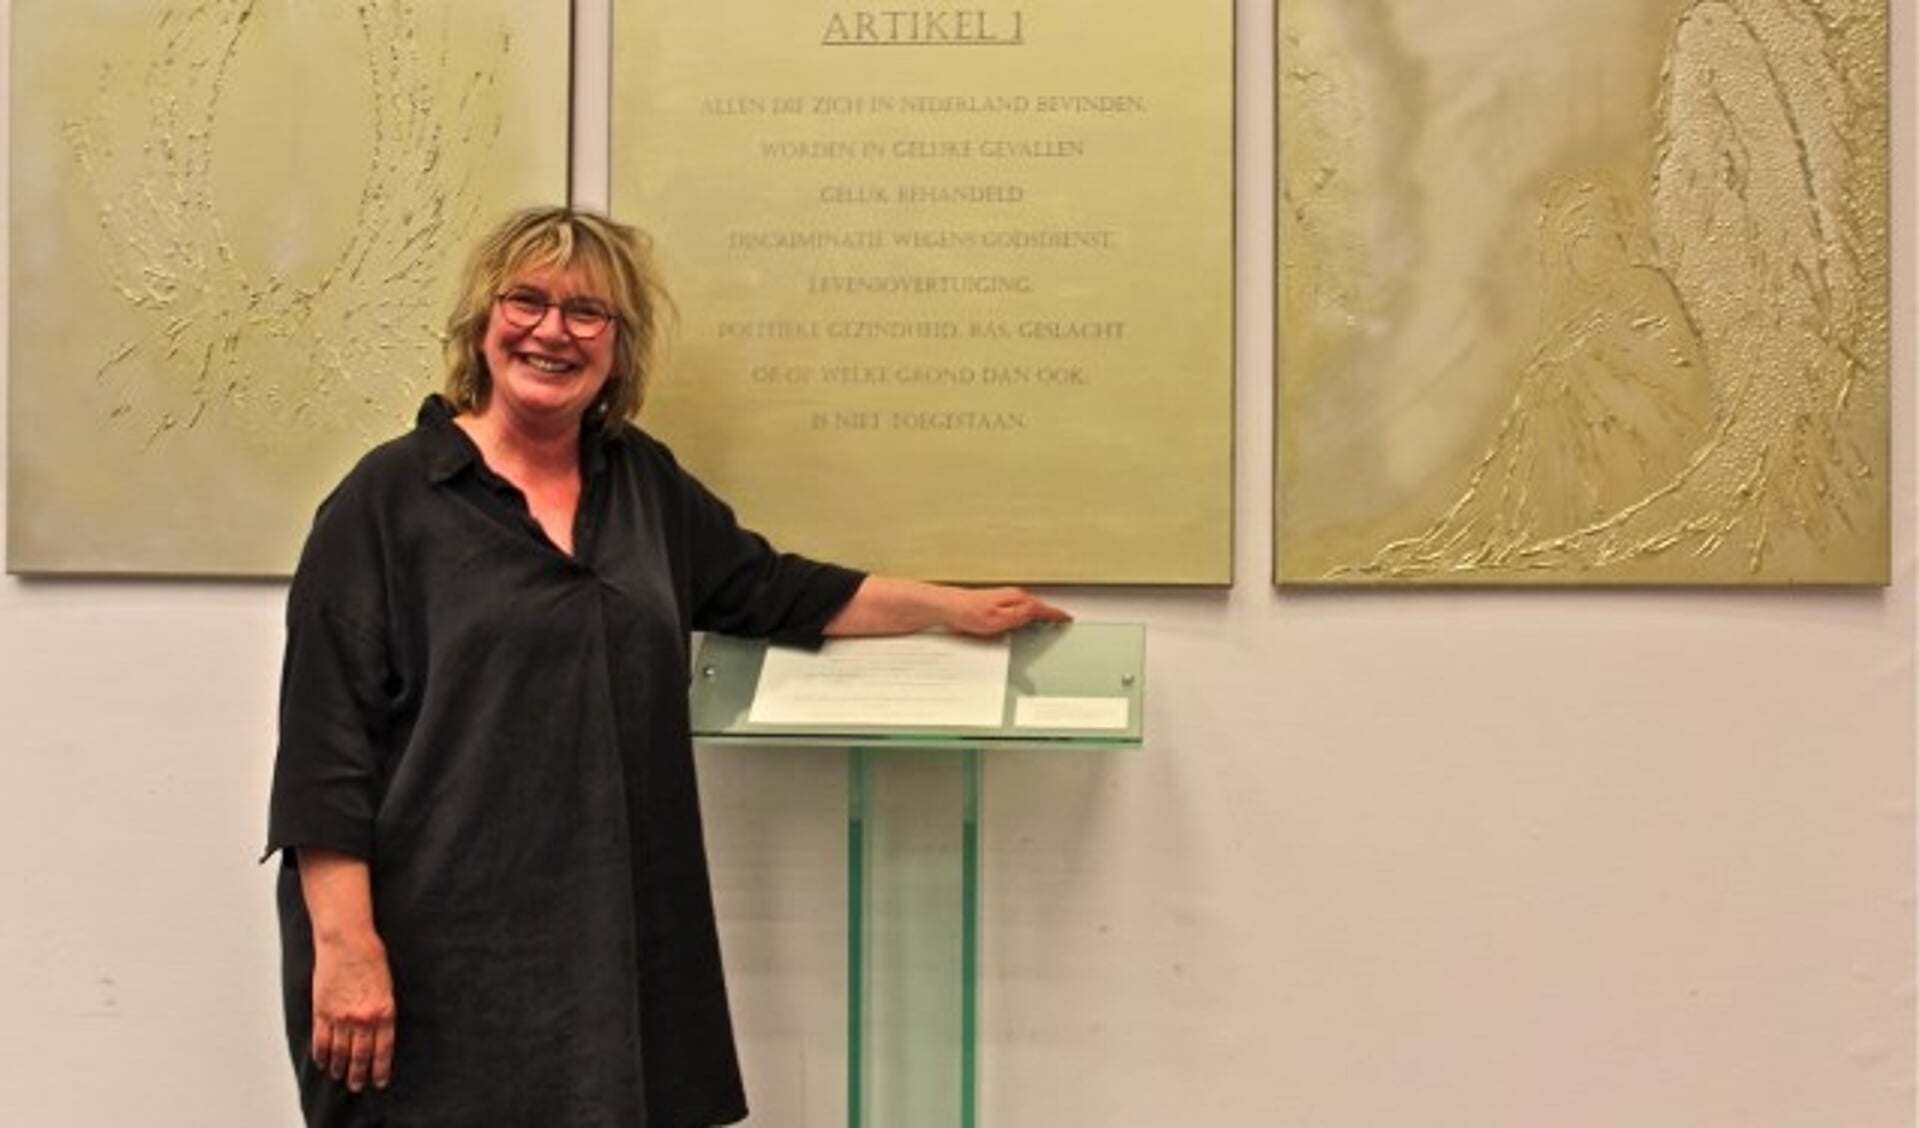 Kunstenaar Iris van Haaren voor het drieluik en gedicht dat zij maakte in het kader van de viering 100 jaar algemeen kiesrecht